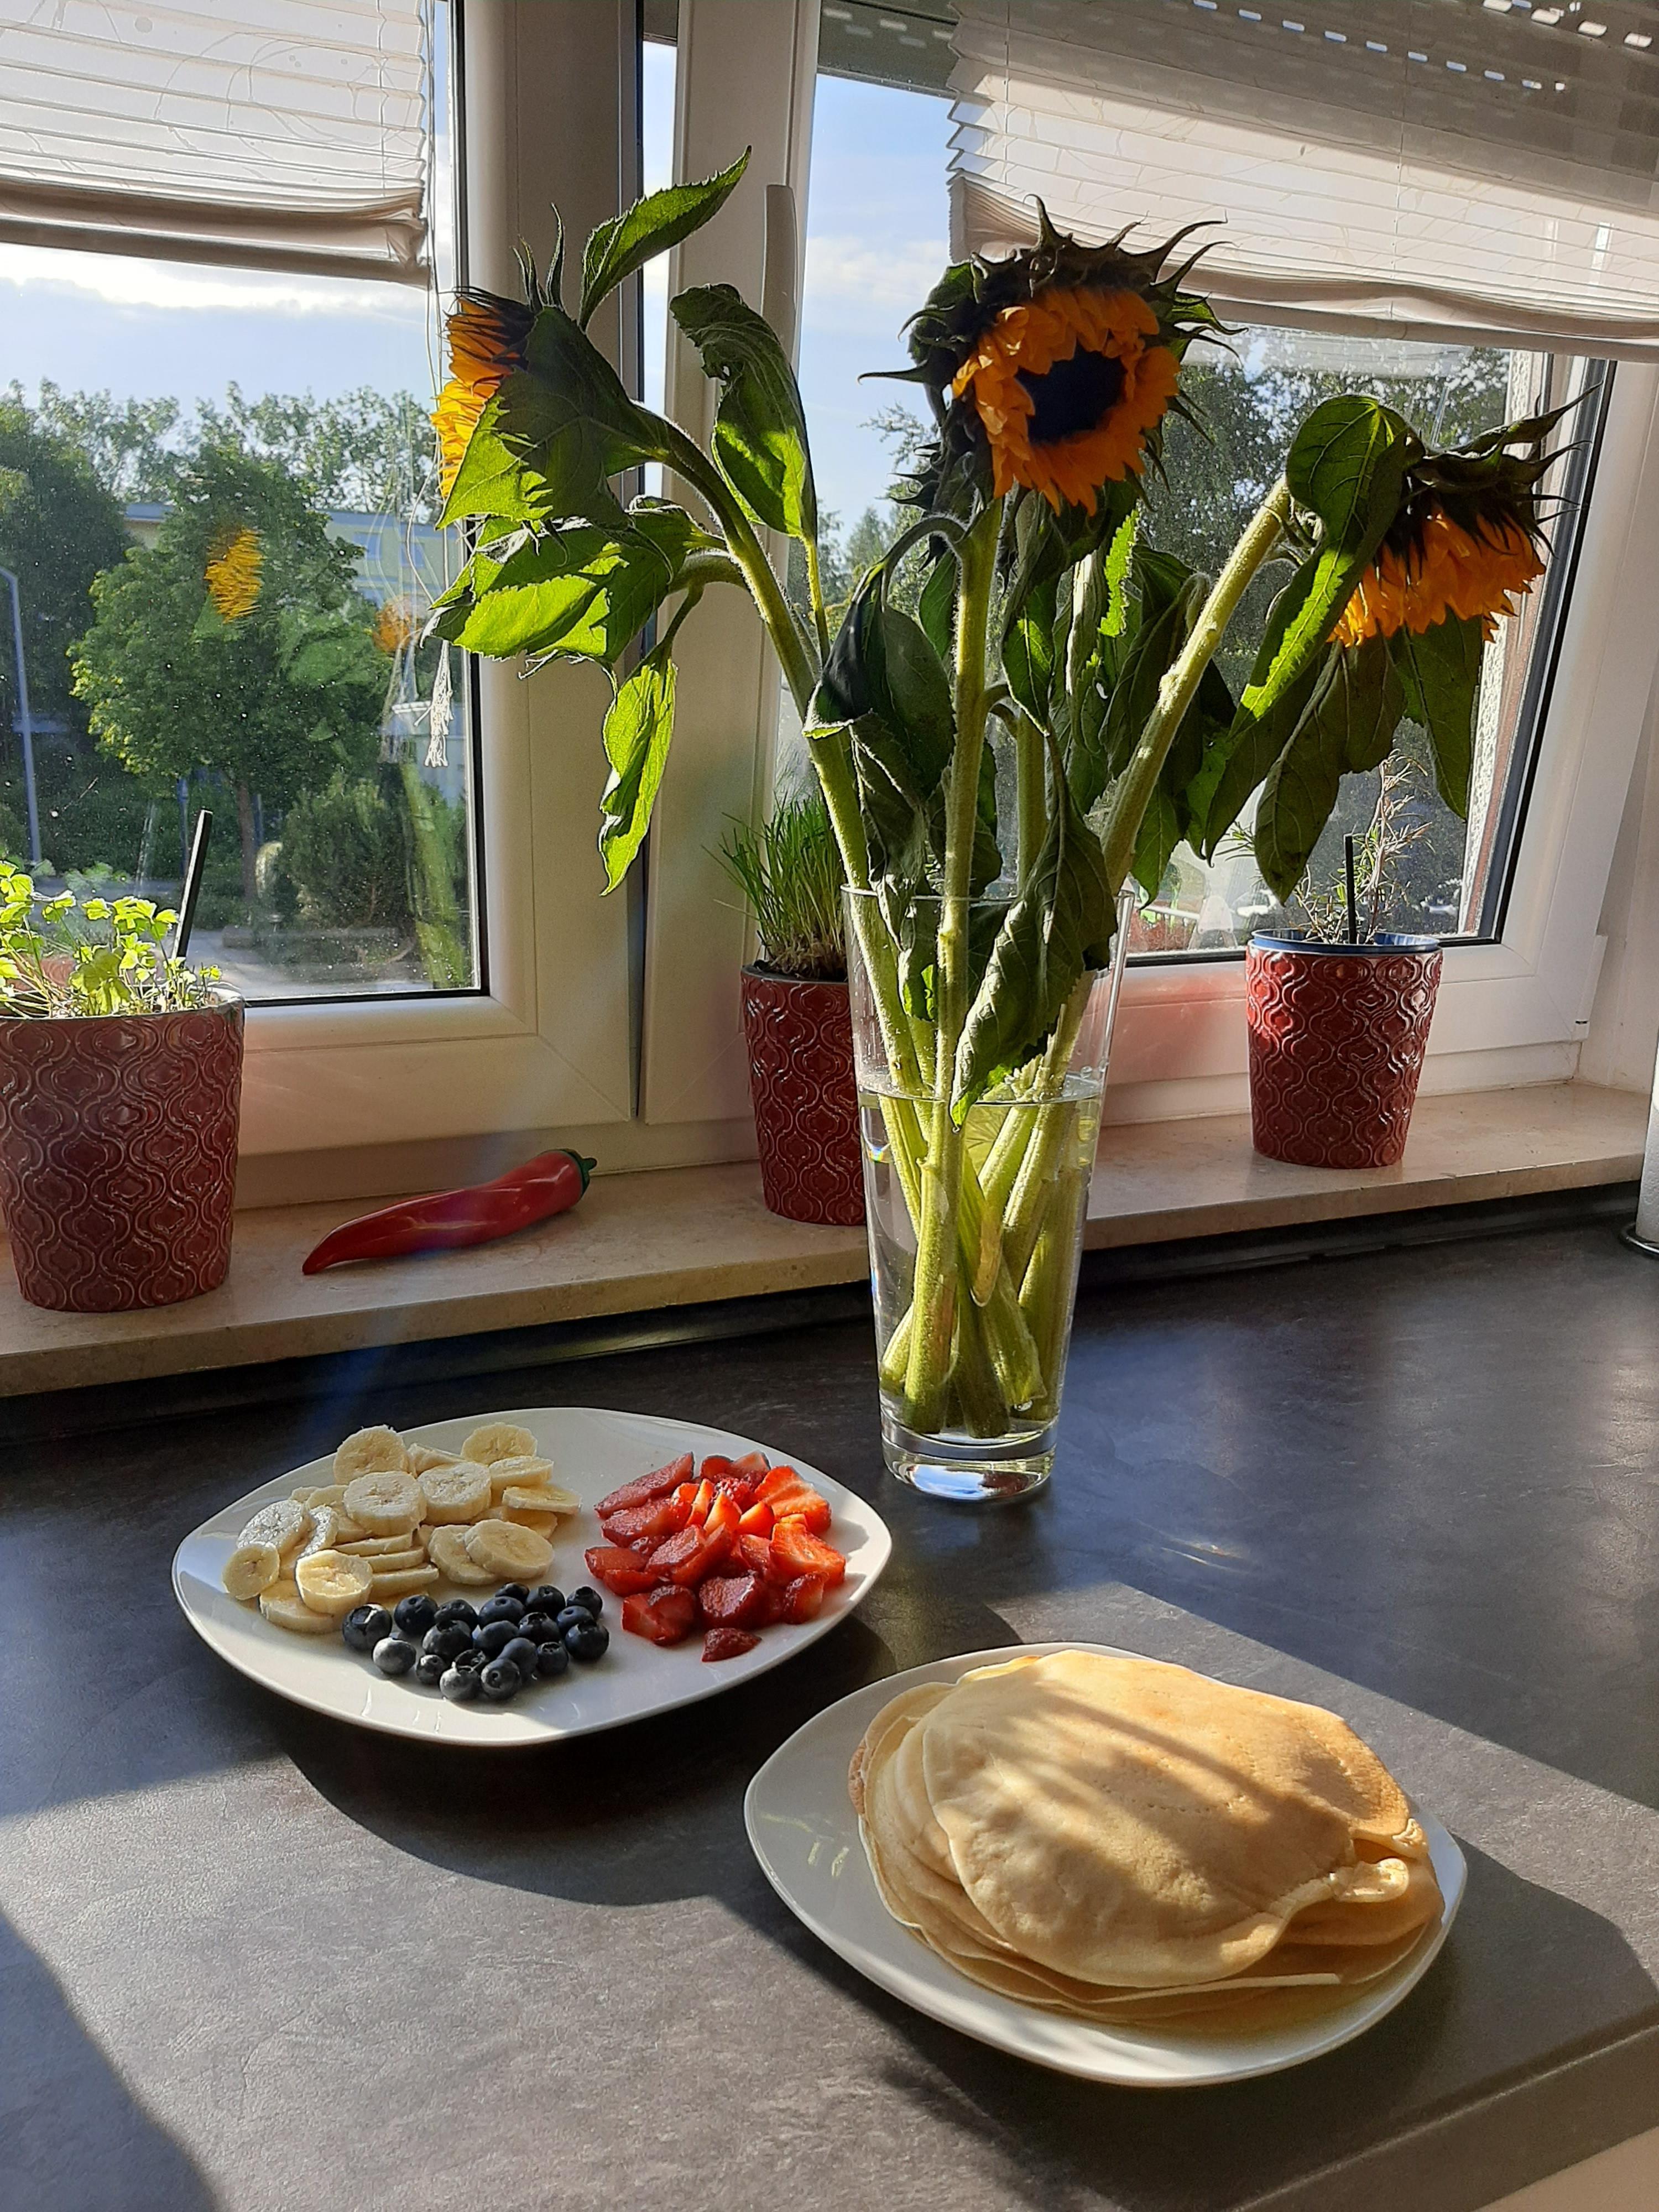 Guten Morgen!
#Frühstück #Bananen #Erdbeeren #Blaubeeren #Pfannkuchen #Morgensonne #Küche
#sonnenblumen 
